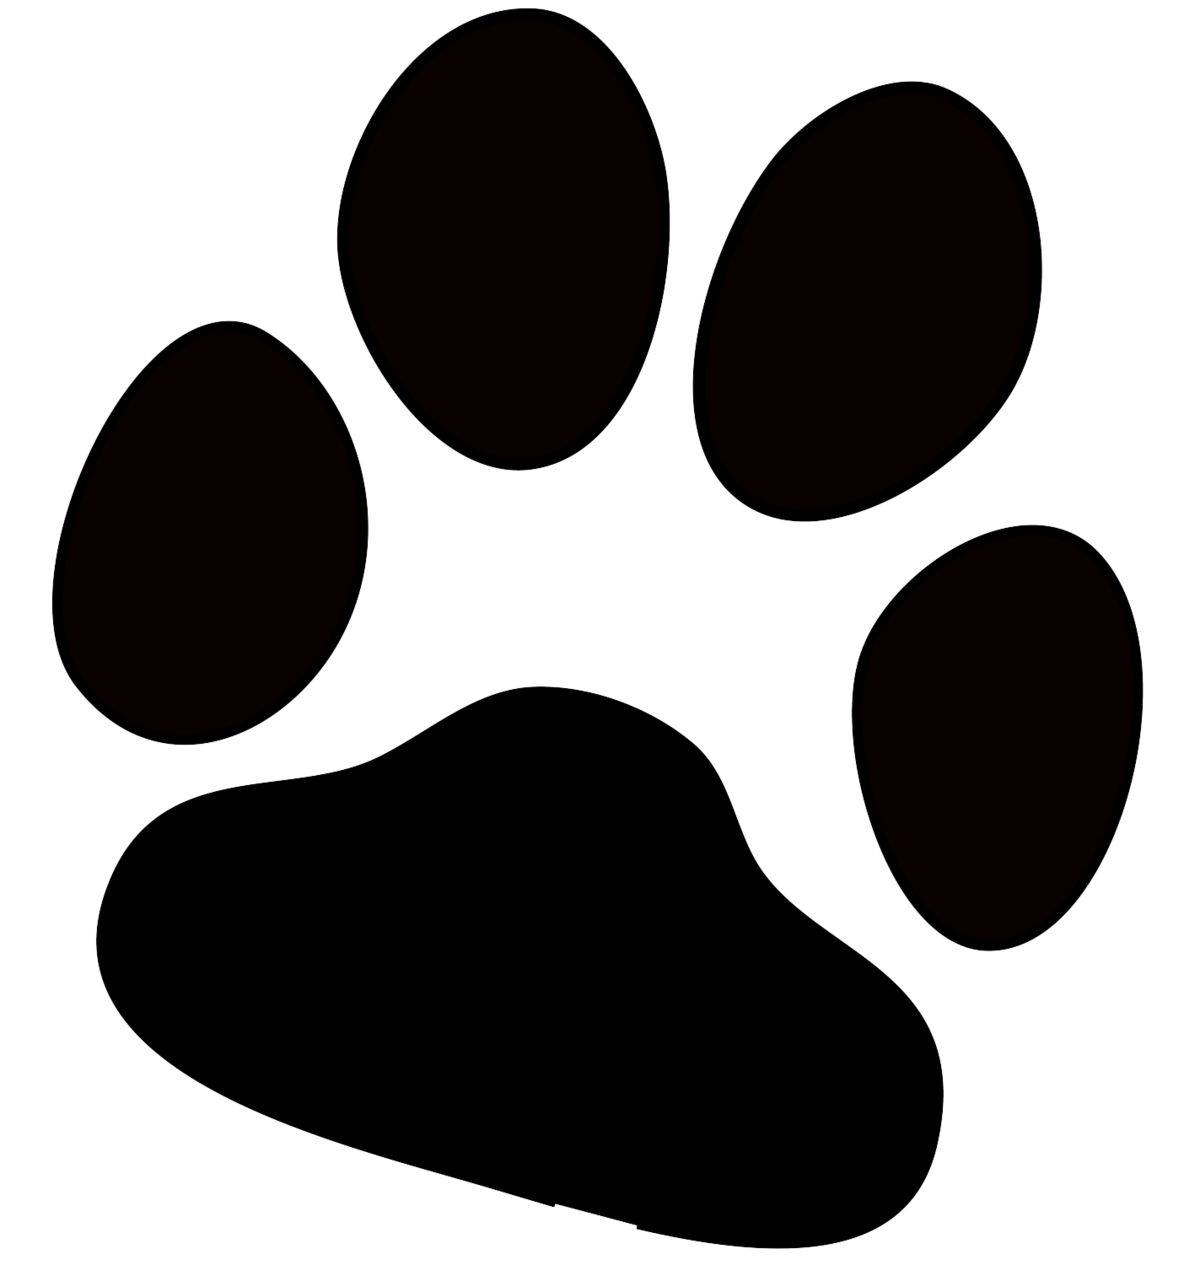 File:Dog Paw Print.png - Wikipedia